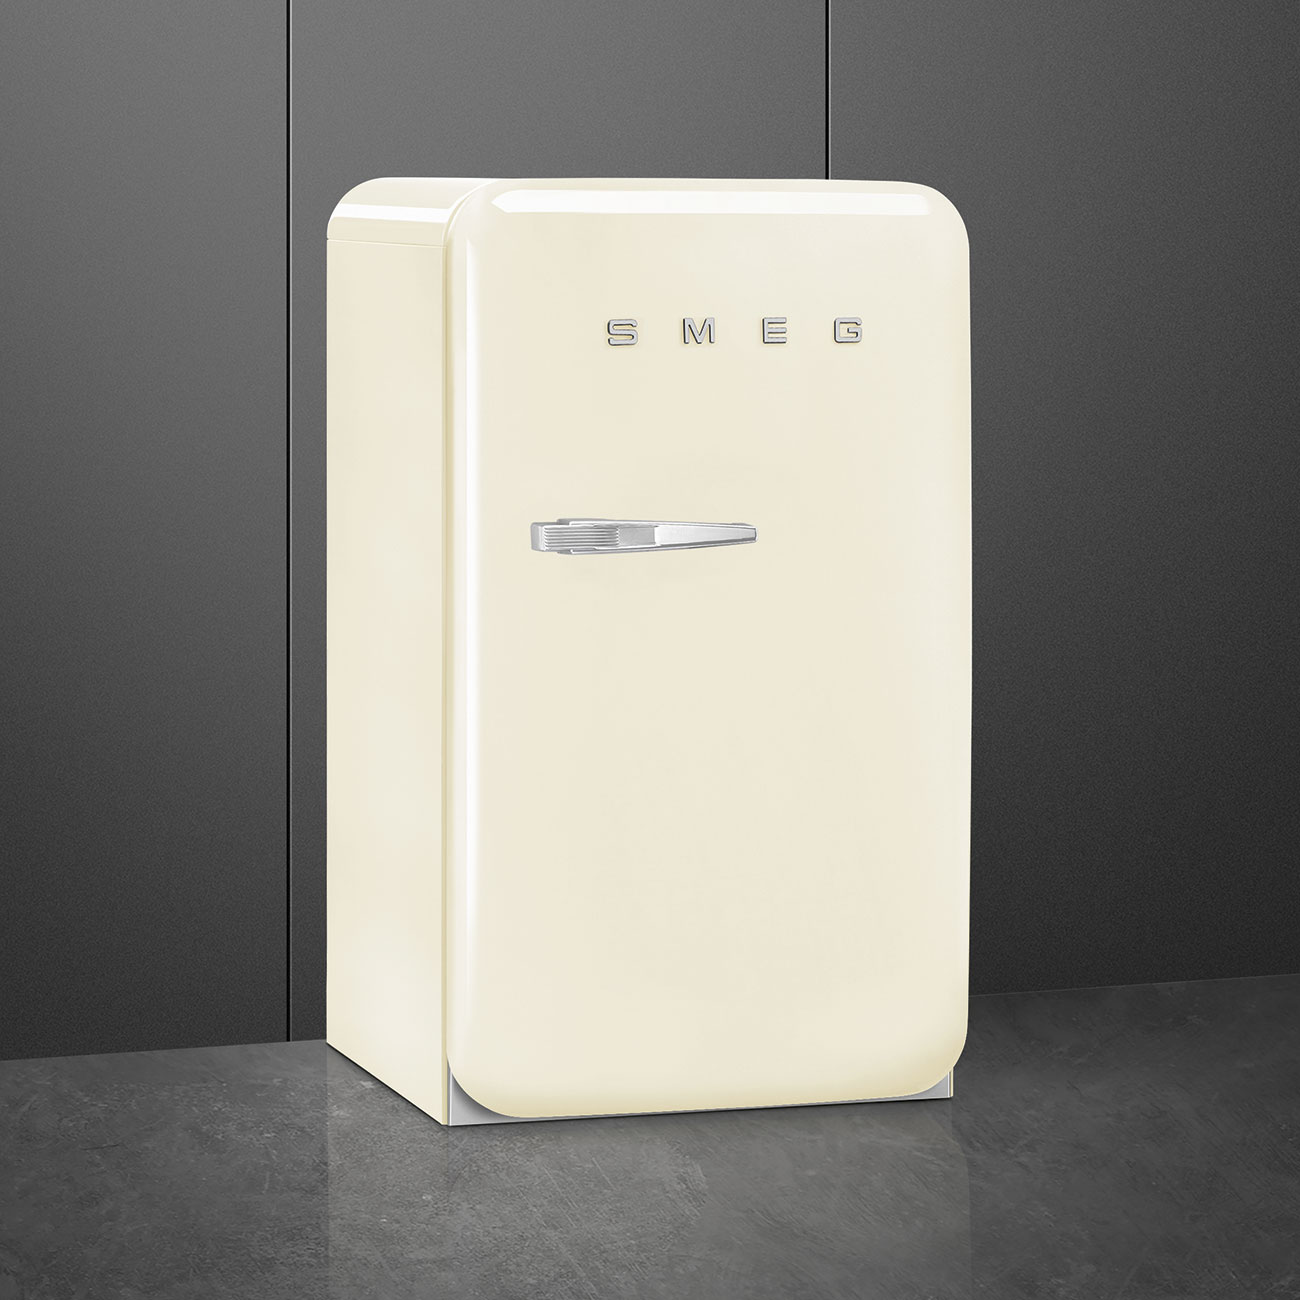 Cream refrigerator - Smeg_3